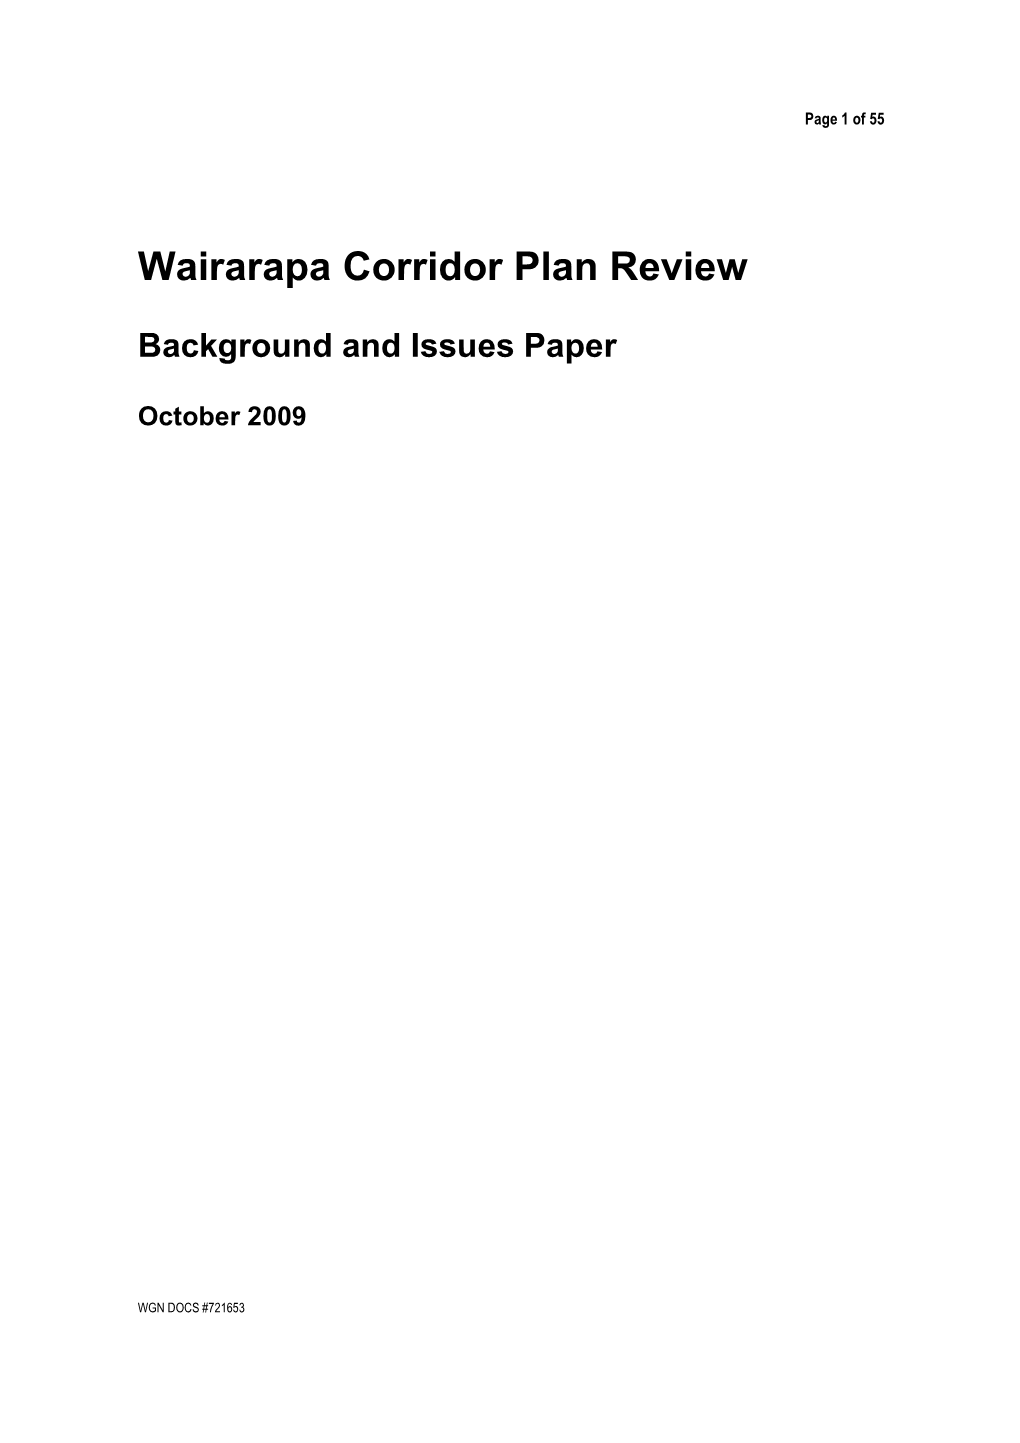 Wairarapa Corridor Plan Review